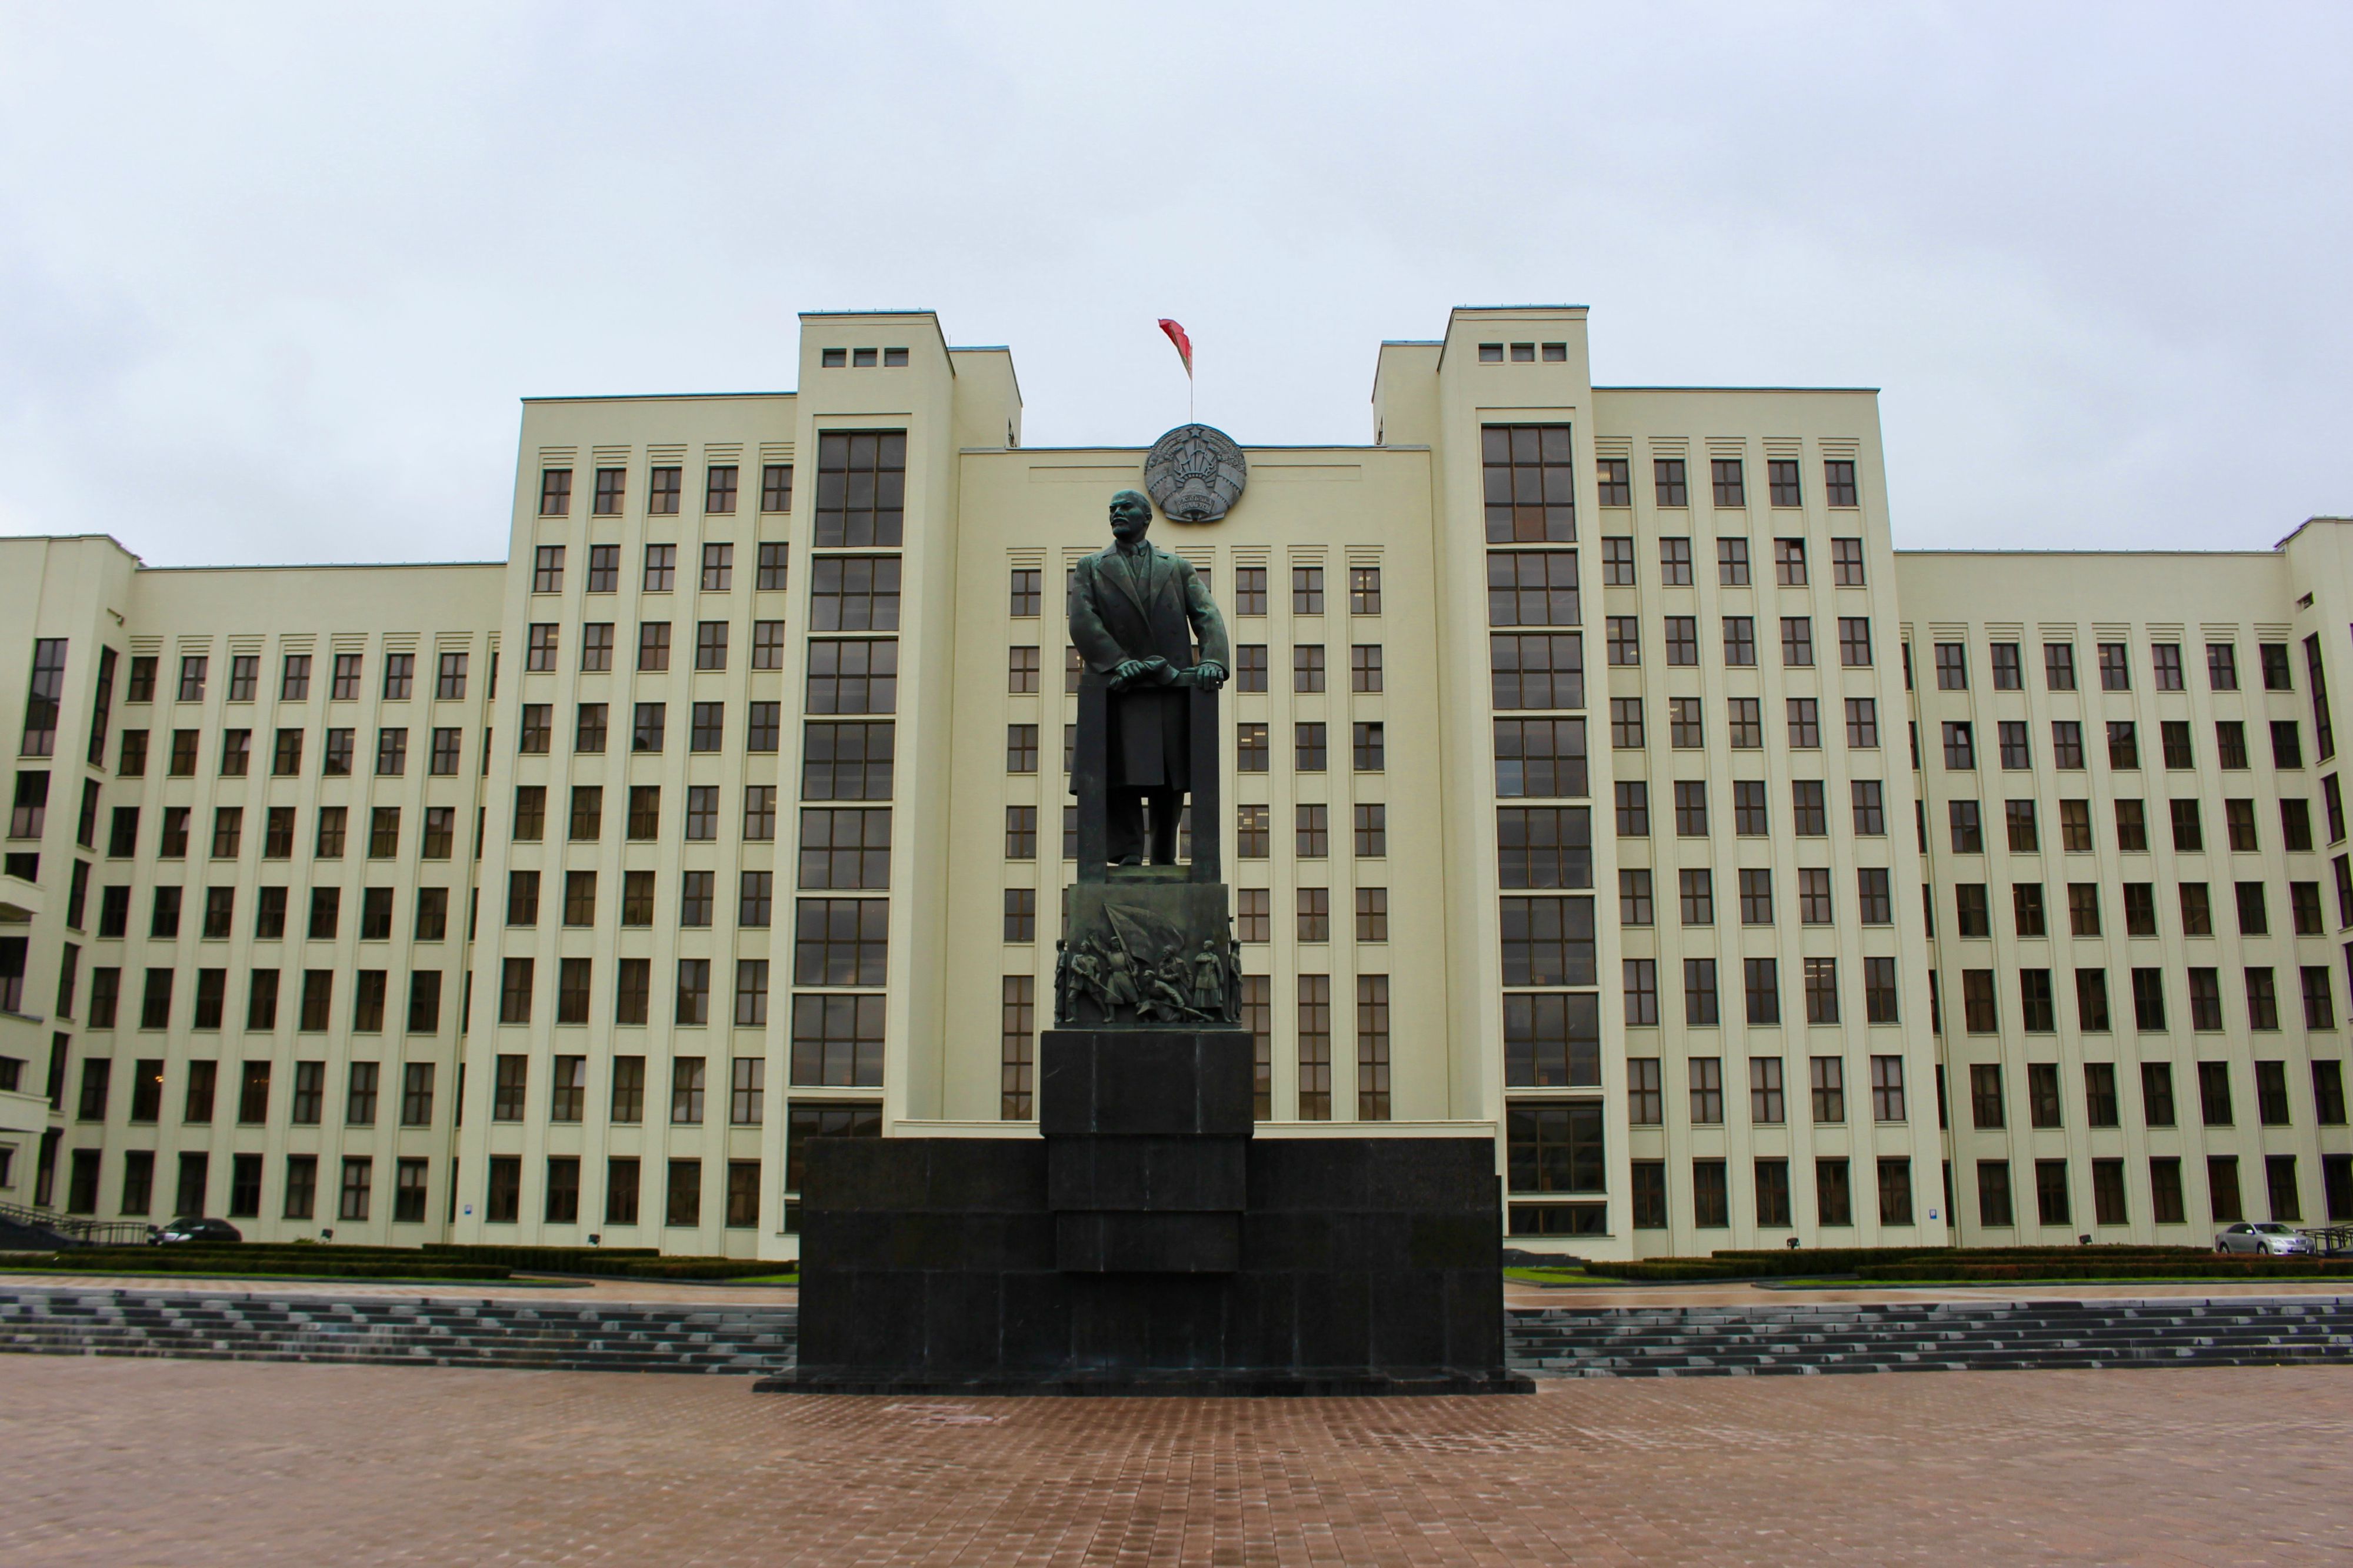 Kommunistisk arkitektur er der masser af i Minsk. Her med en Lenin statue foran.